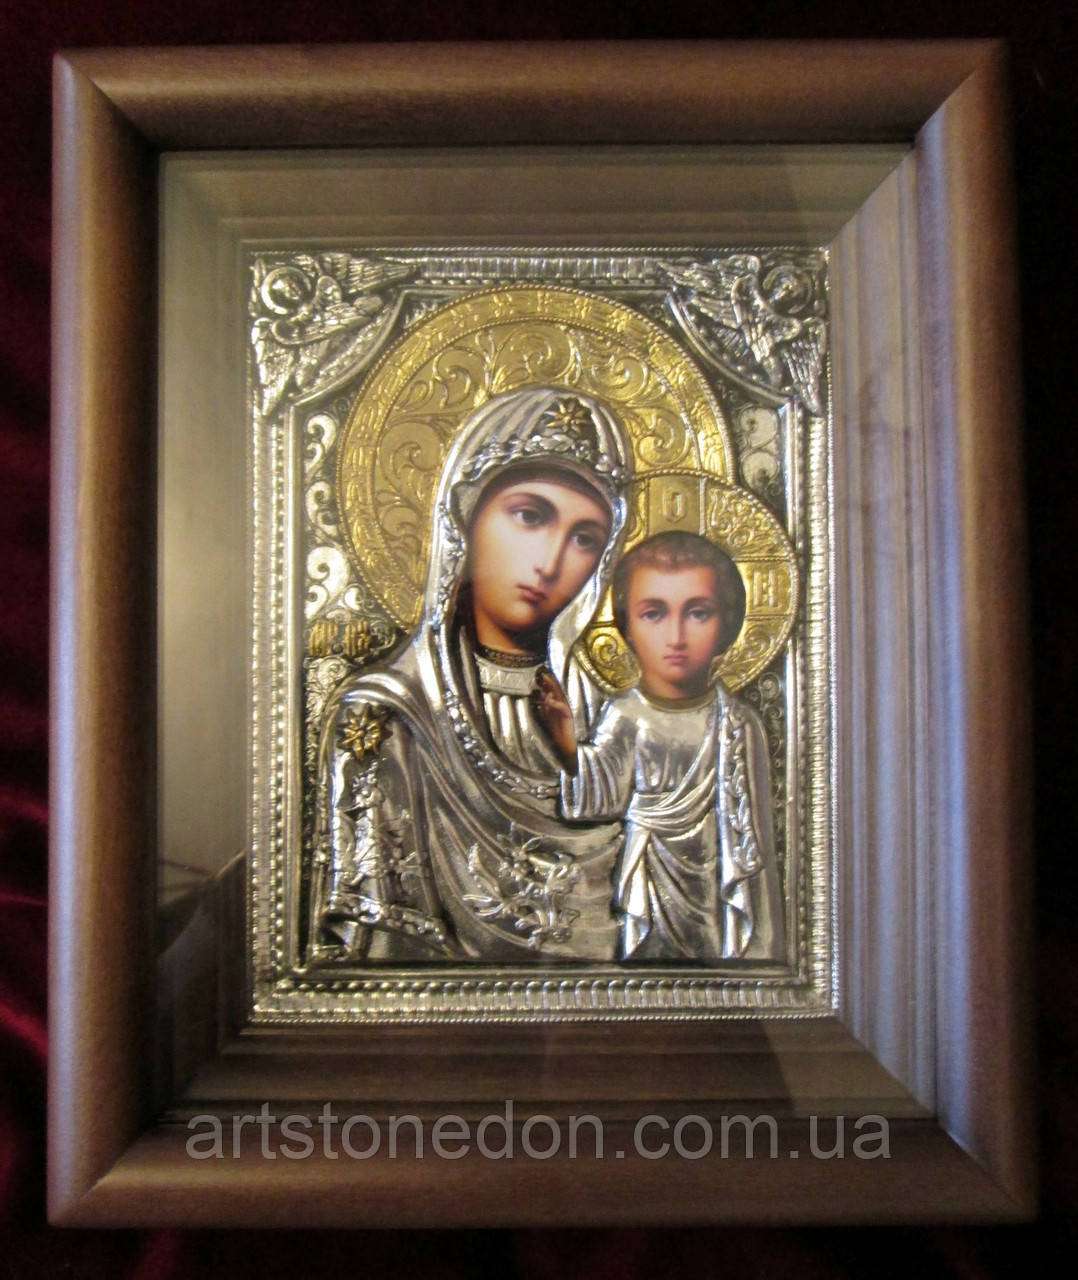 Інтернет агазин якісних ікон. Казанська ікона Божої Матері, срібло з позолотою No63